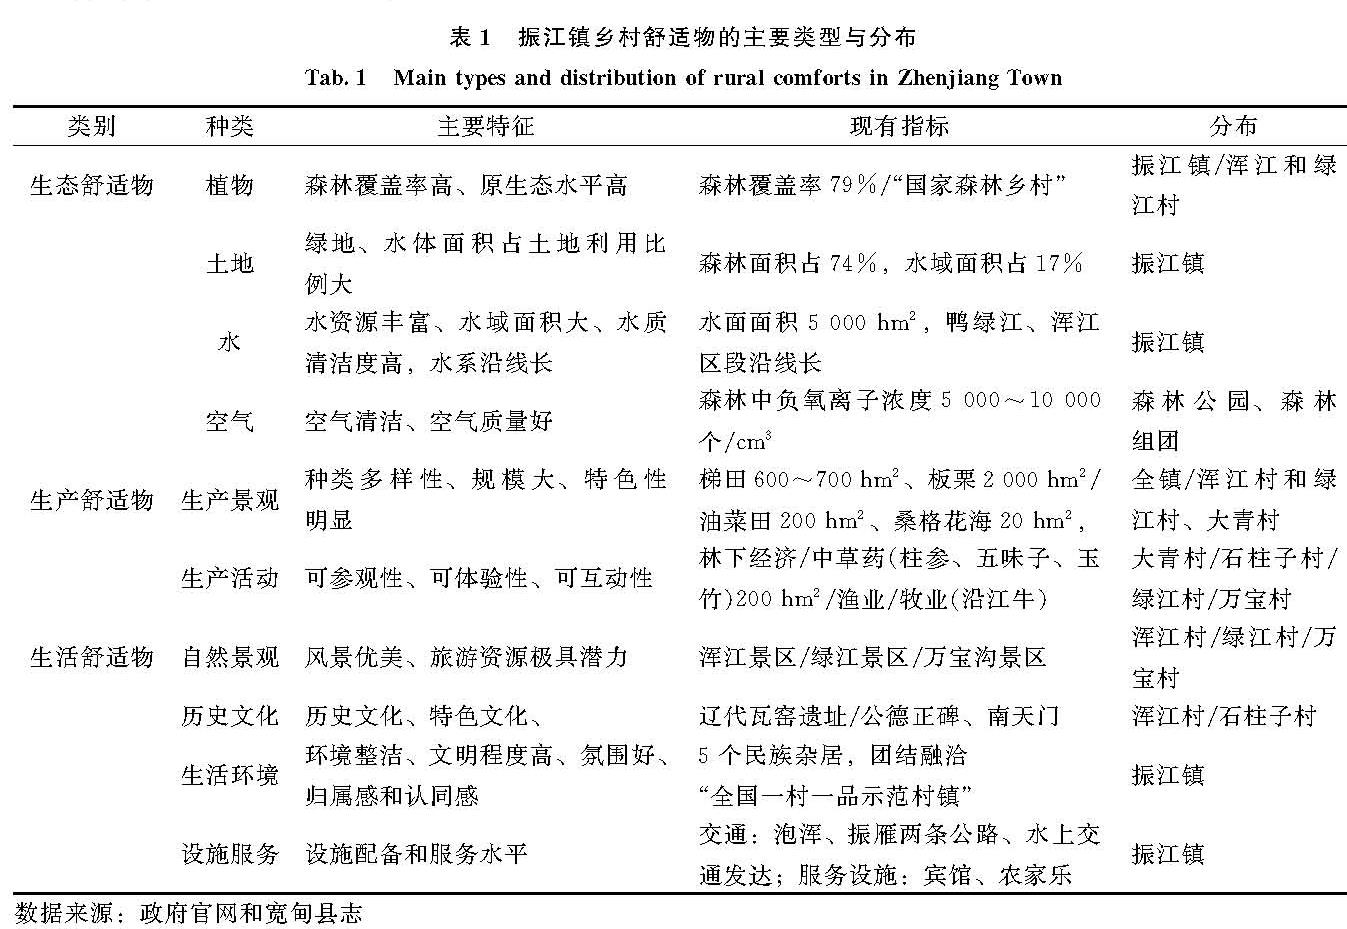 表1 振江镇乡村舒适物的主要类型与分布<br/>Tab.1 Main types and distribution of rural comforts in Zhenjiang Town